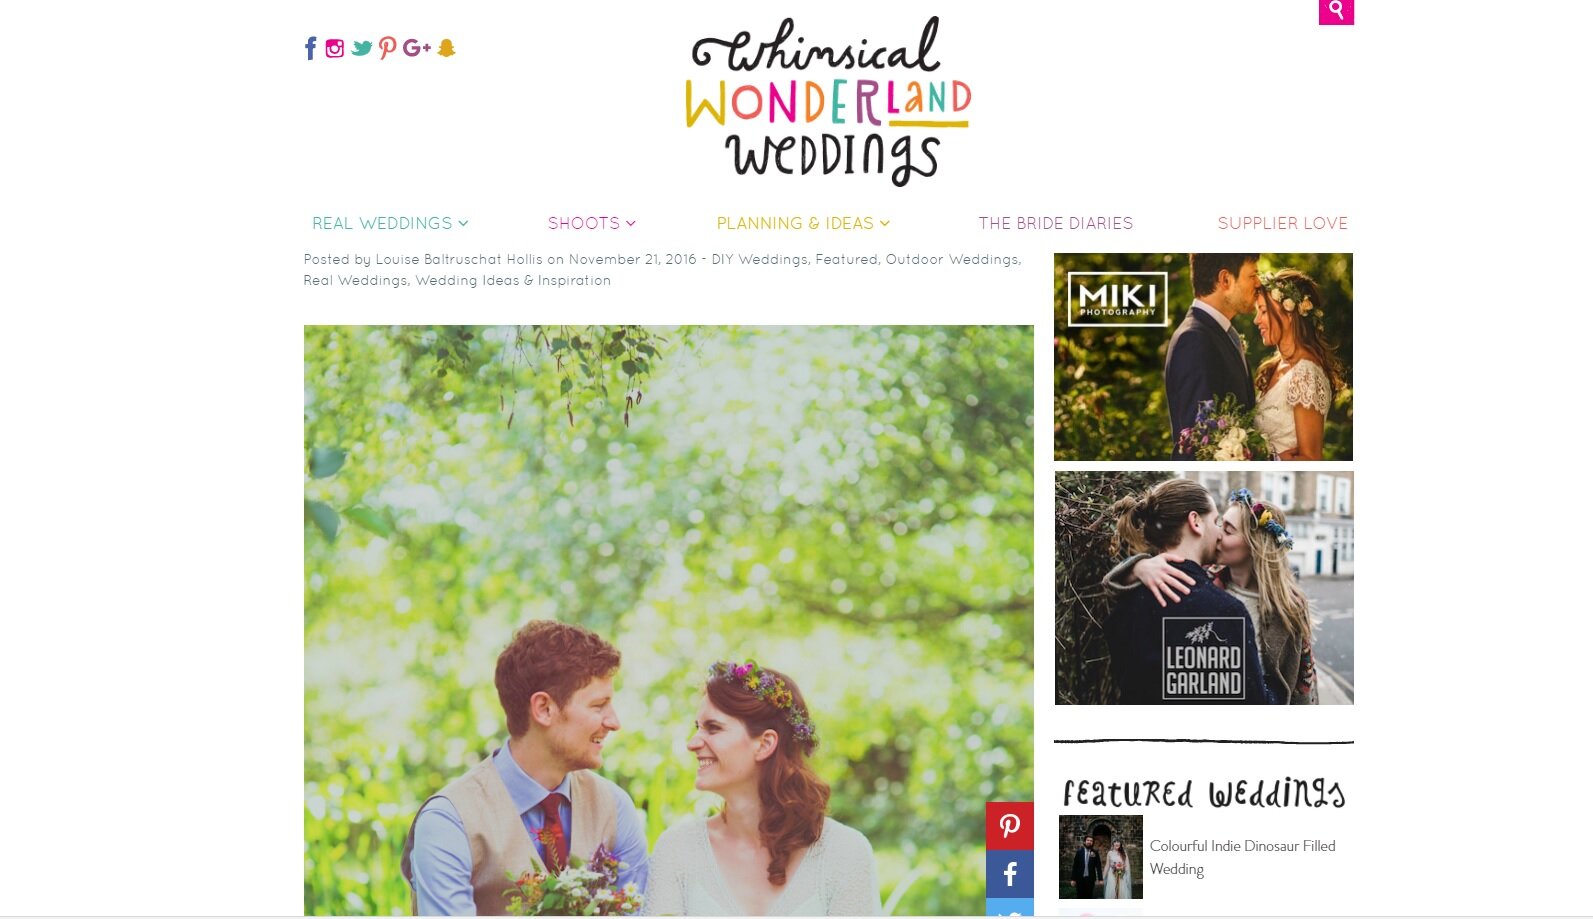 Colourful woodland wedding featured on Whimiscal Wonderland Weddings.